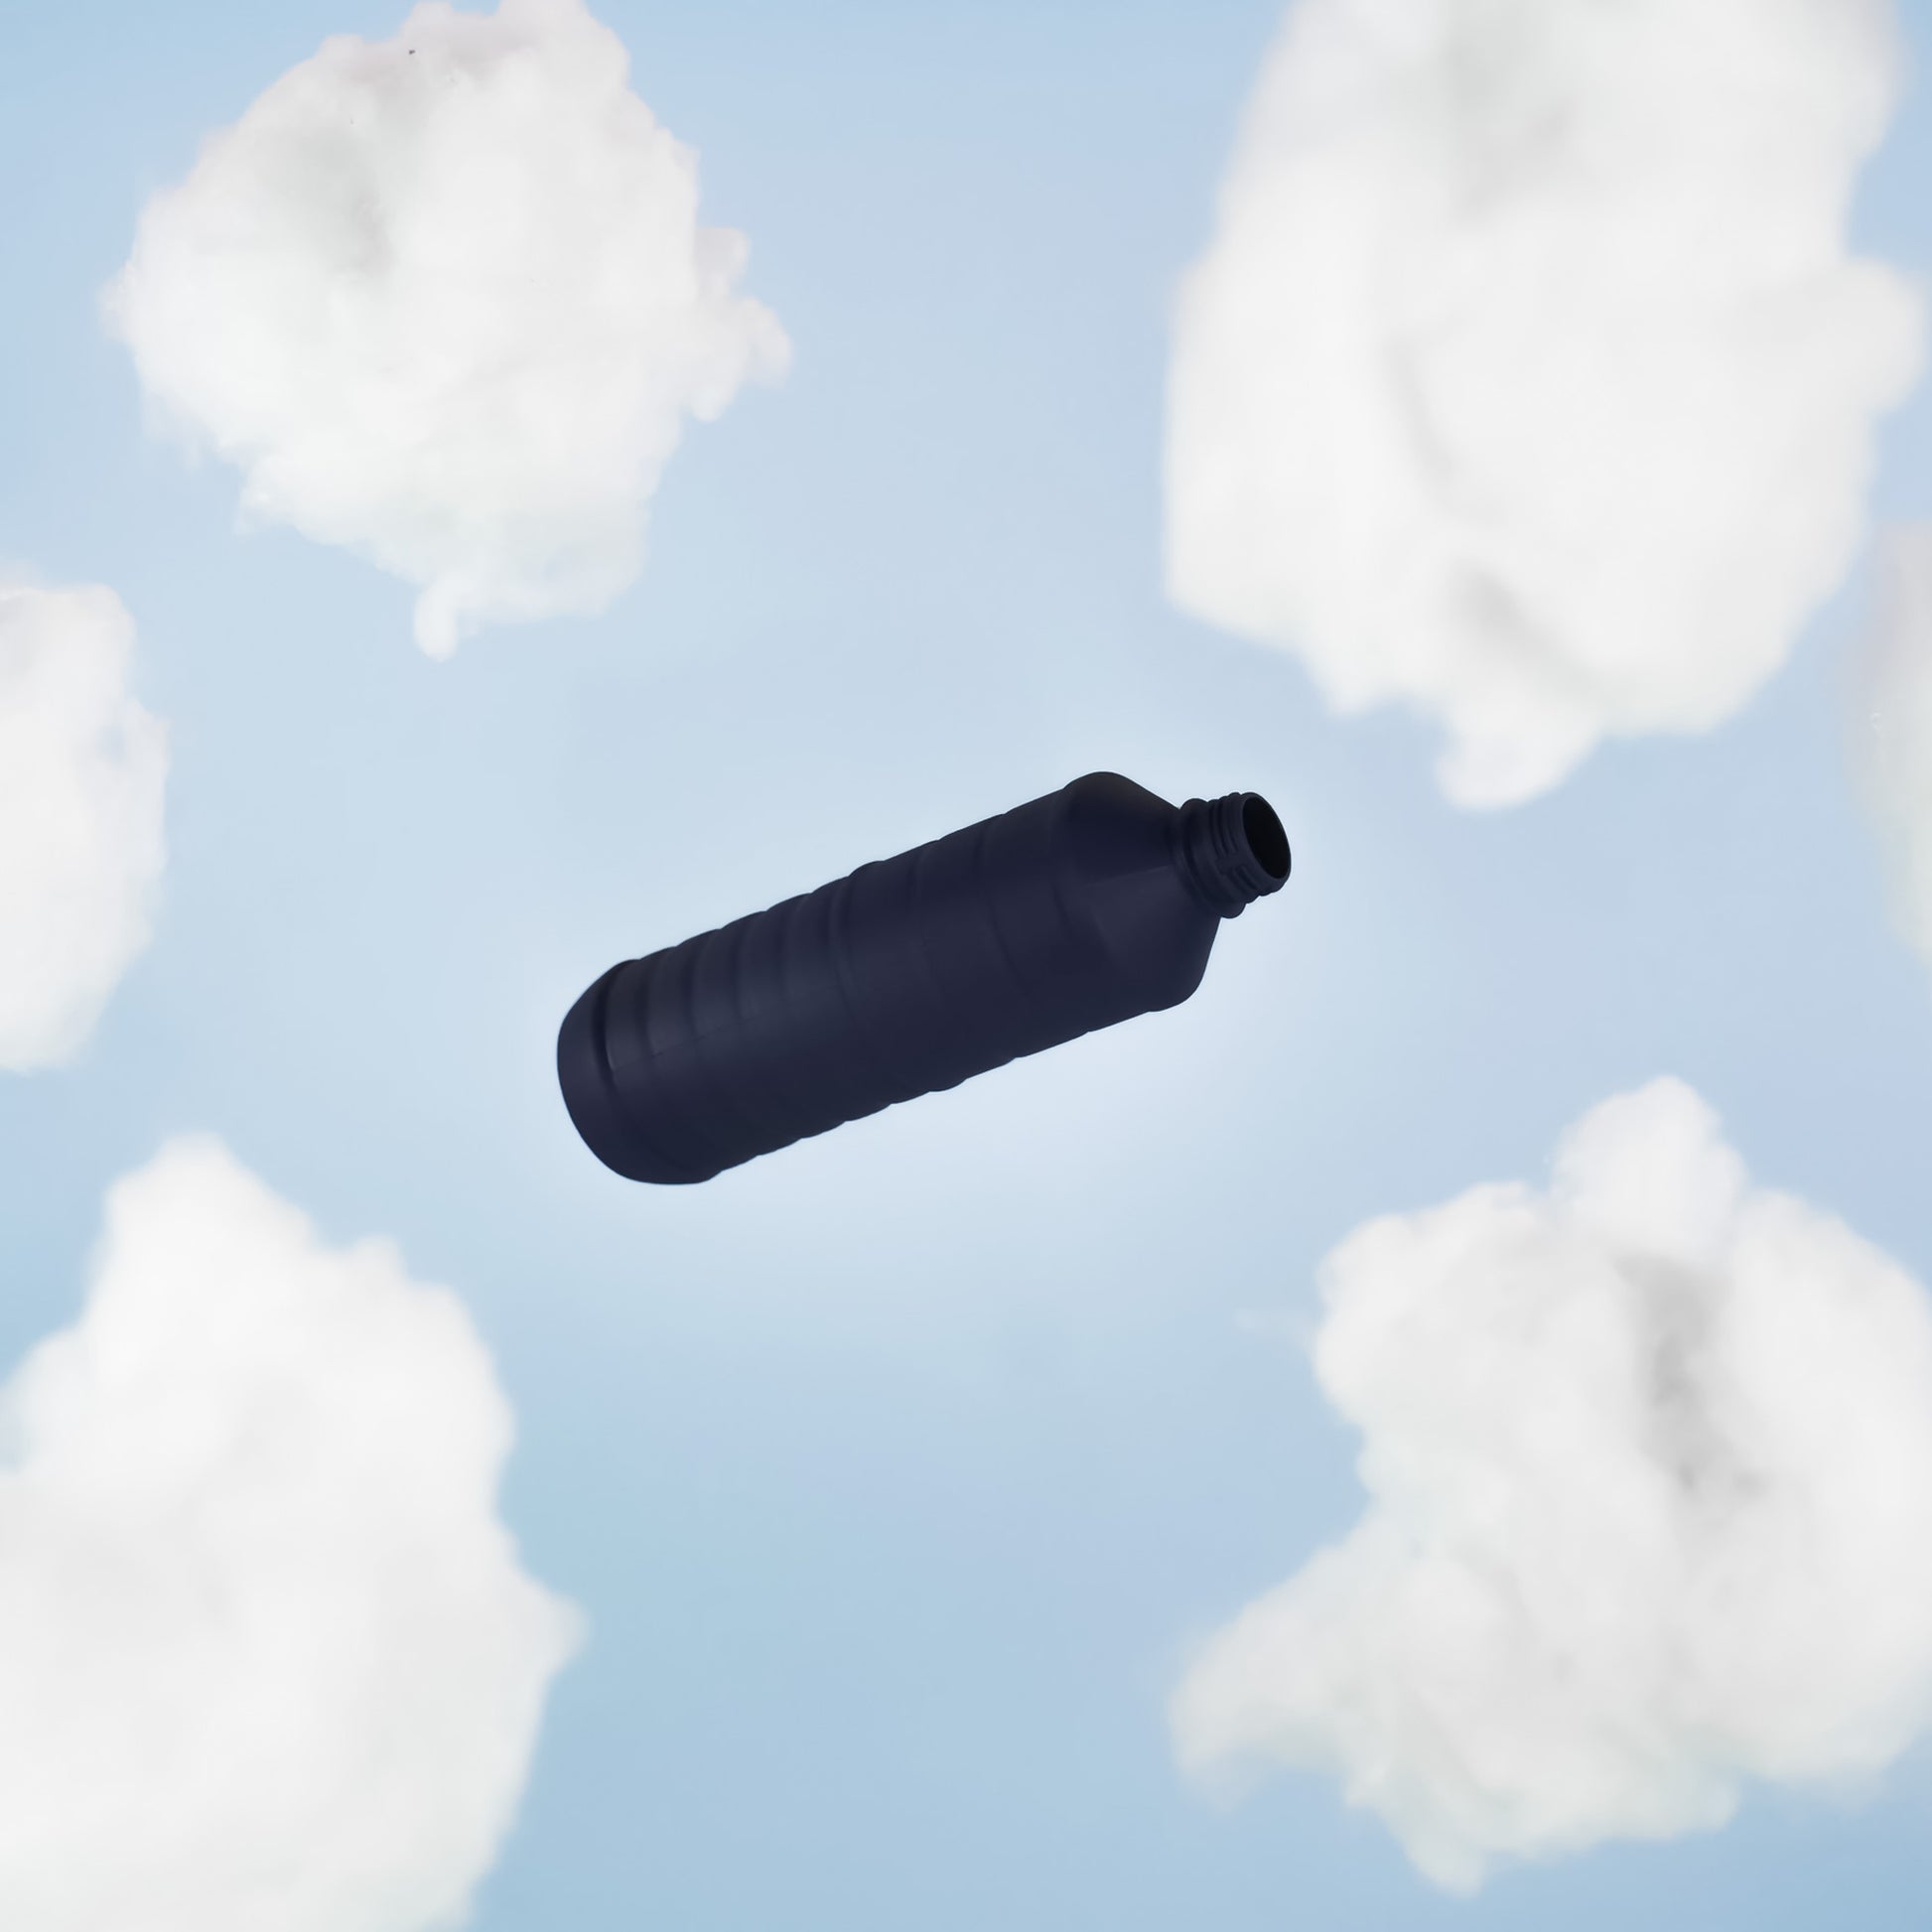 Se muestra un fondo color azul con nubes de fibra simulando el cielo de protagonista se encuentra una botella de pet color azul Oxford.